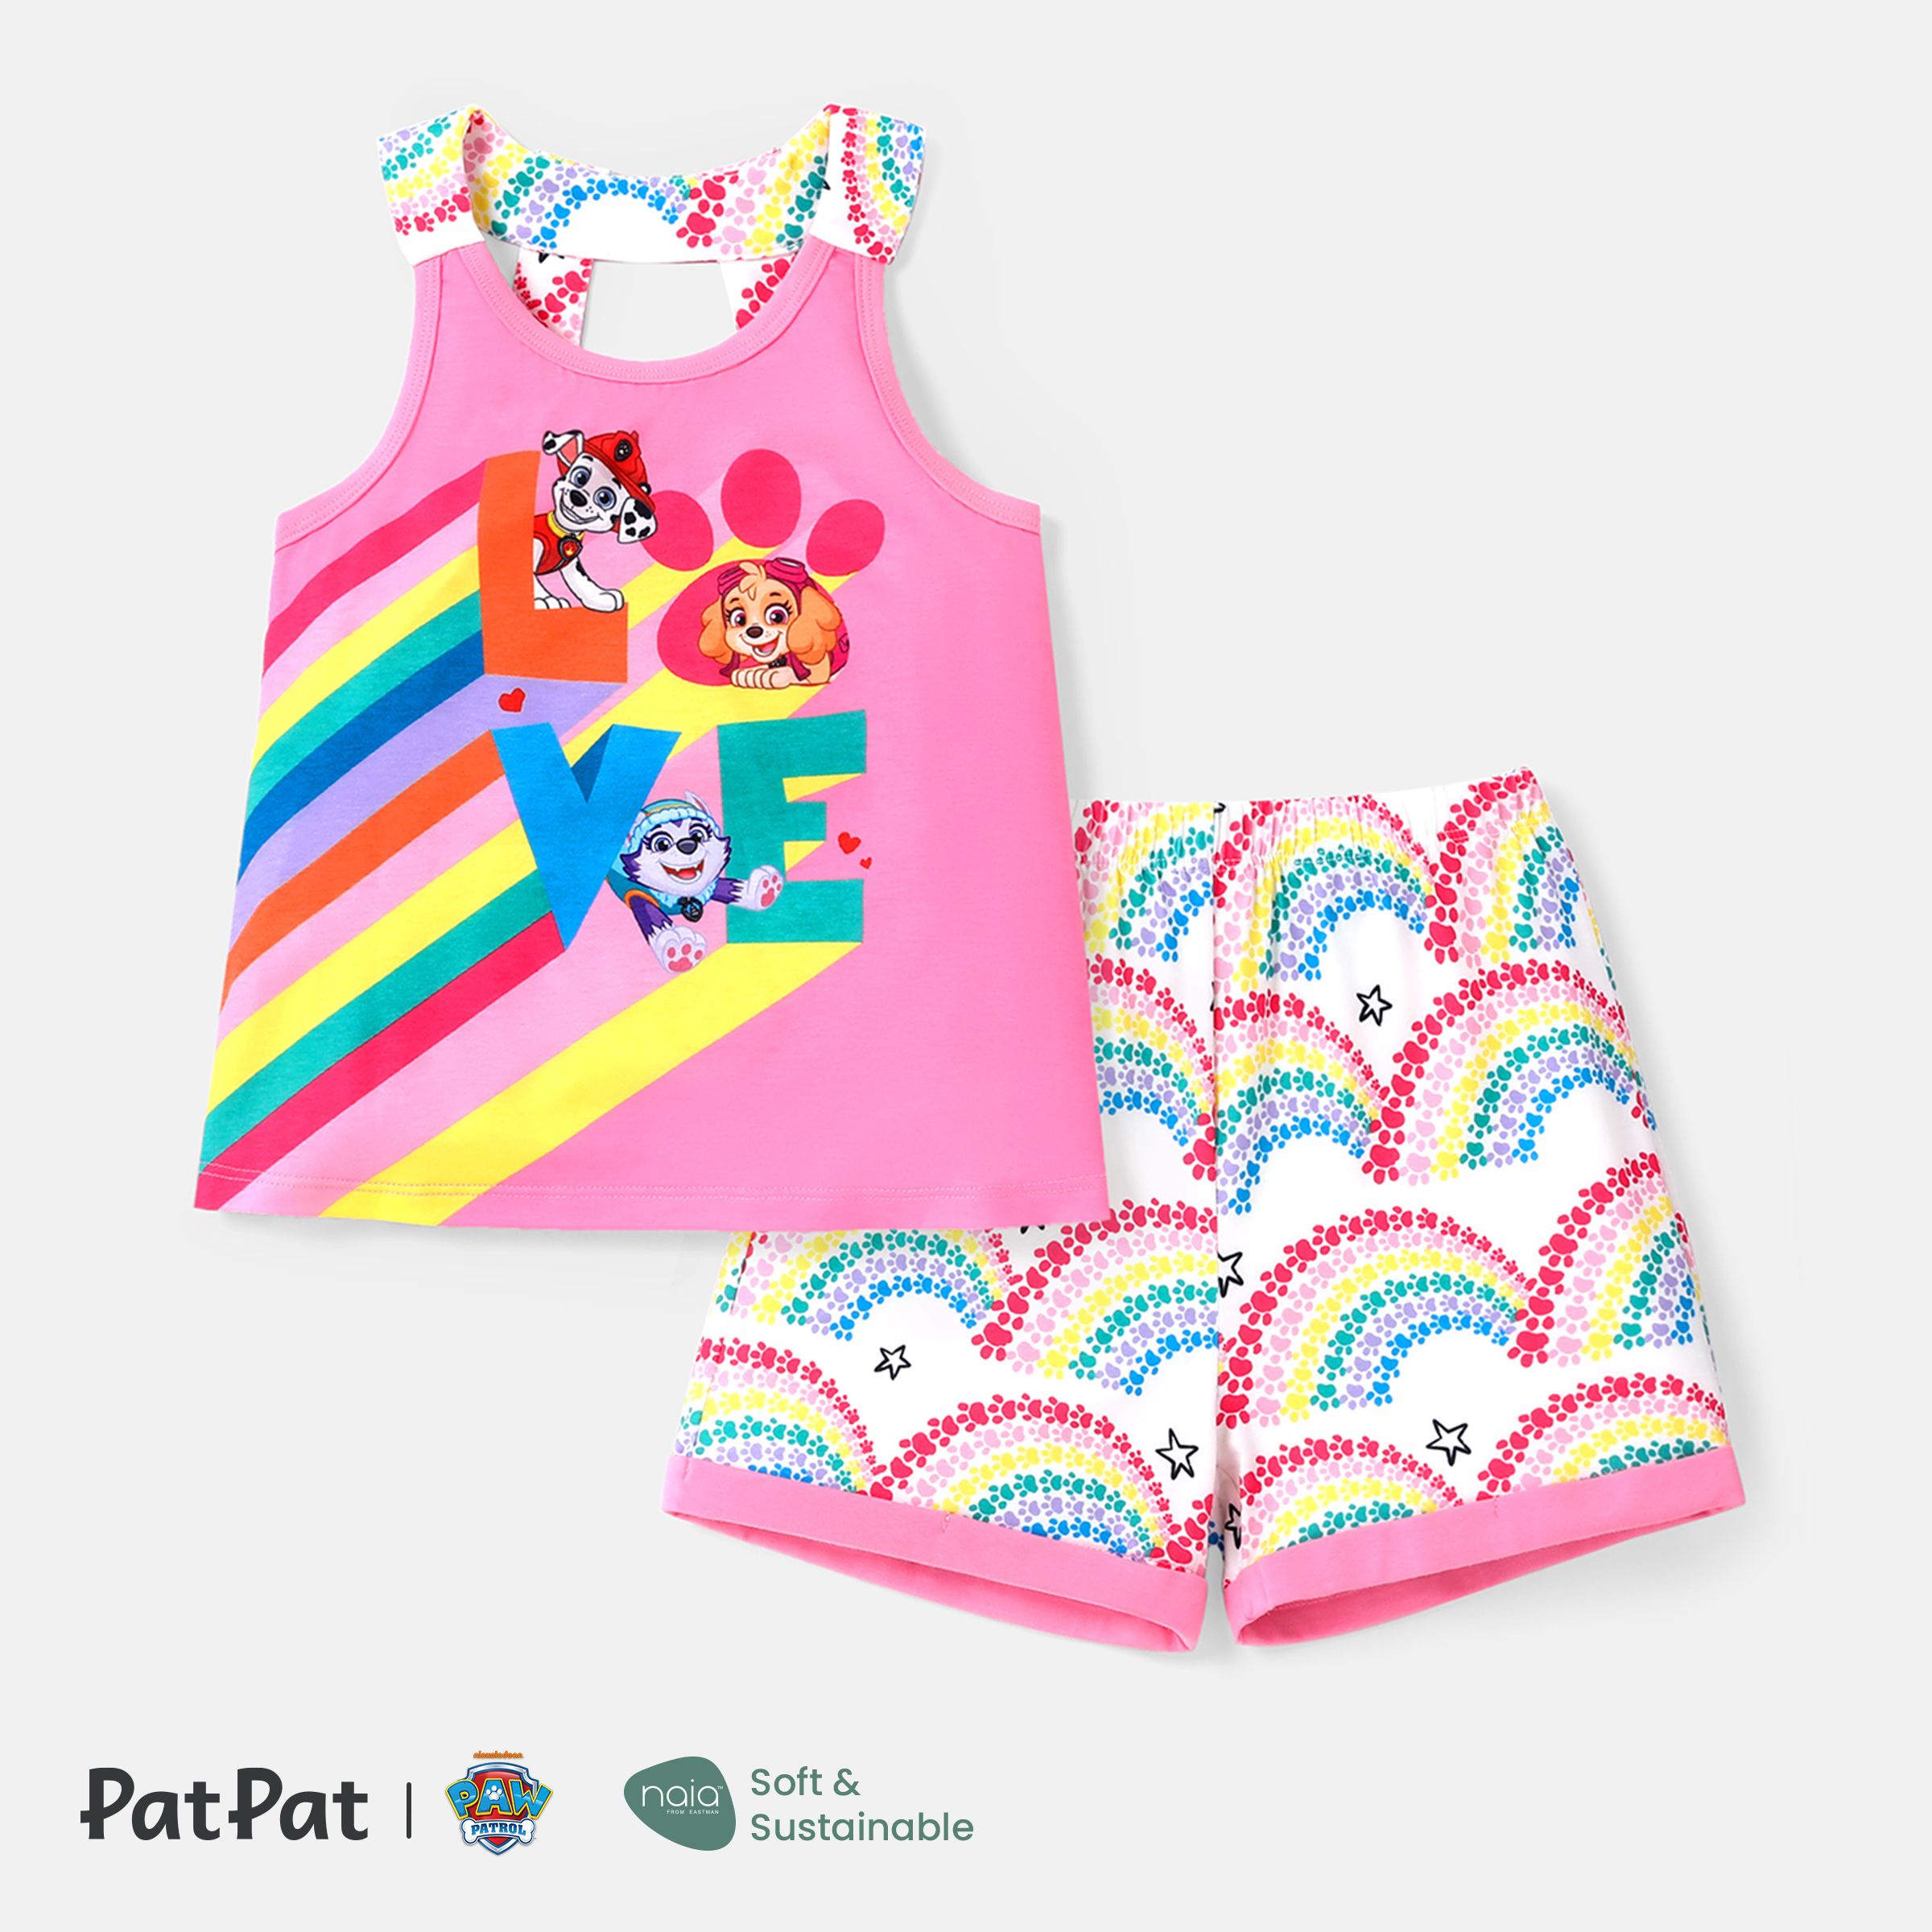 

PAW Patrol Toddler Girl/Boy 2pcs Naia™ Character Print Tank Top and Shorts Set